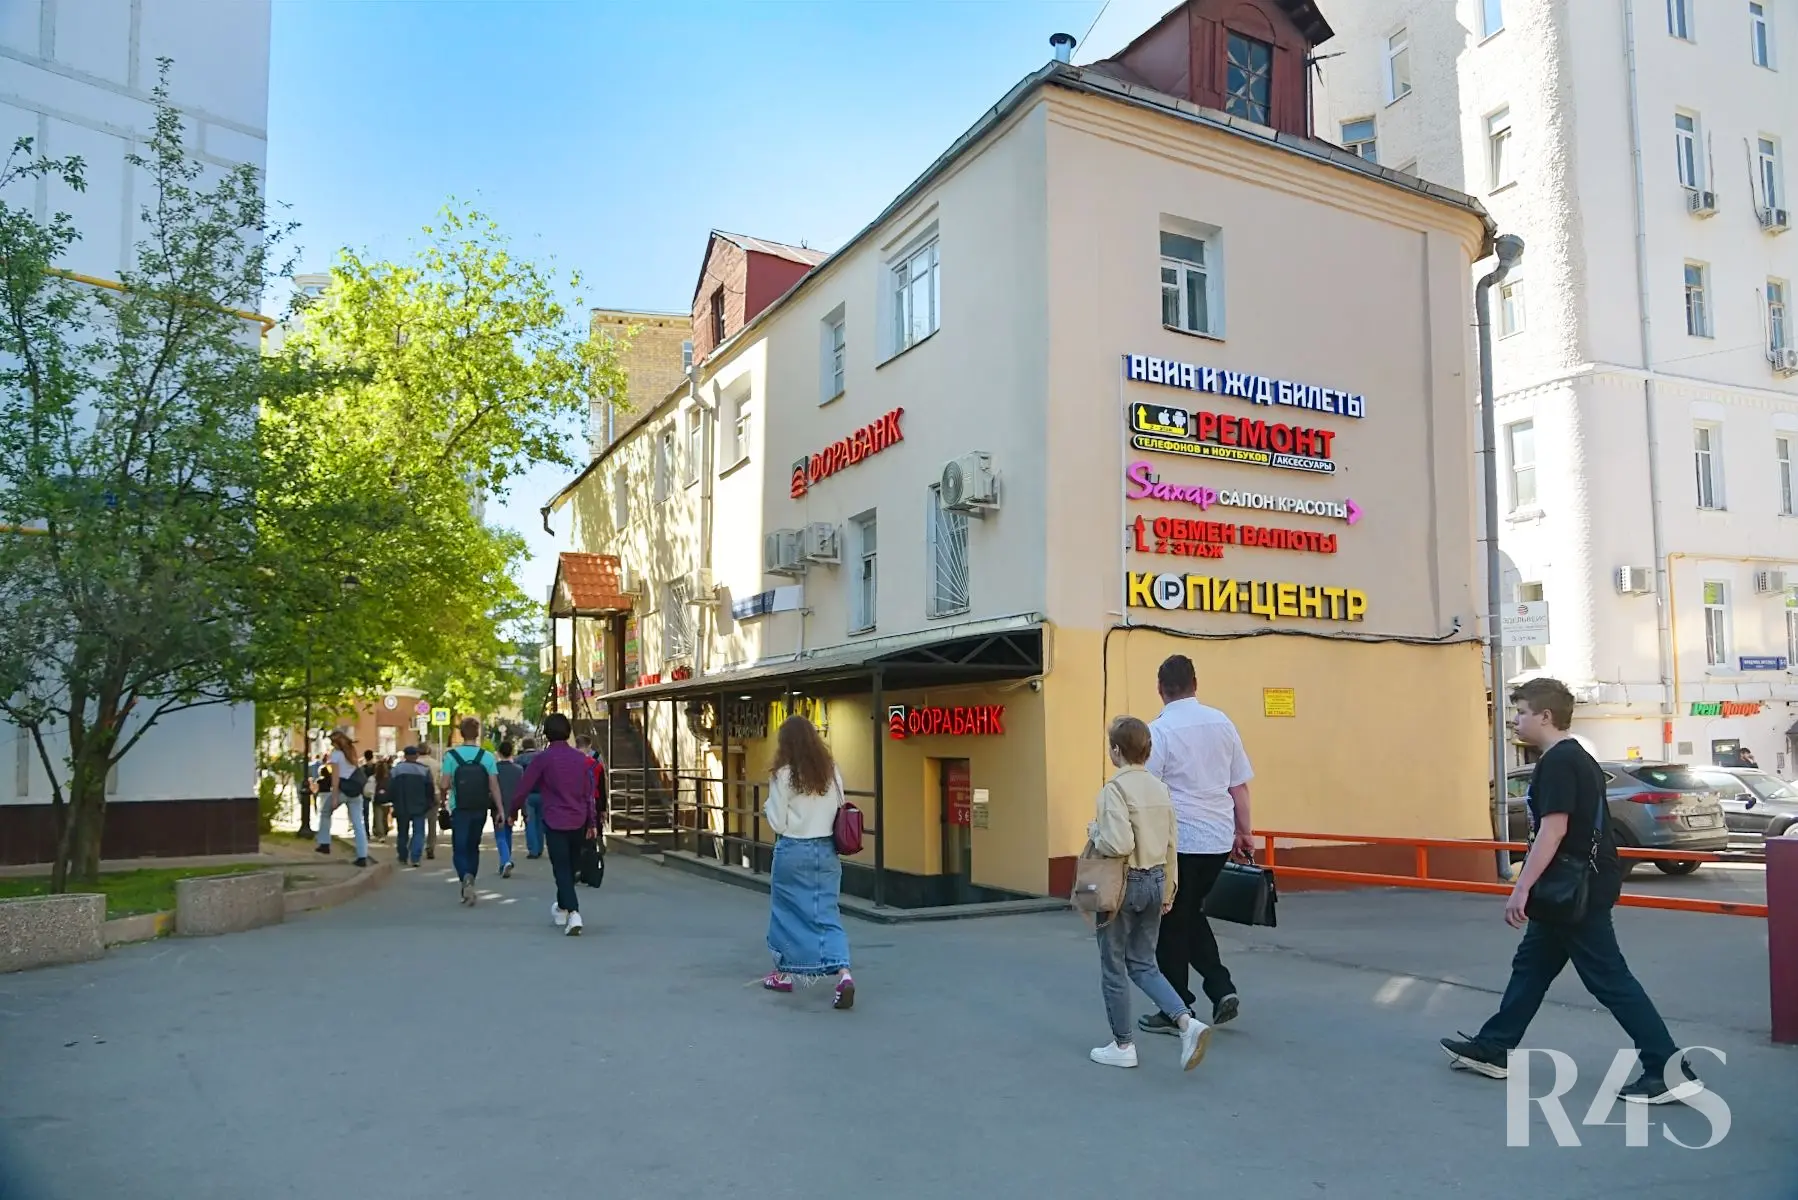 Продажа готового арендного бизнеса площадью 19.5 м2 в Москве: Фридриха Энгельса, 3-5с2 R4S | Realty4Sale